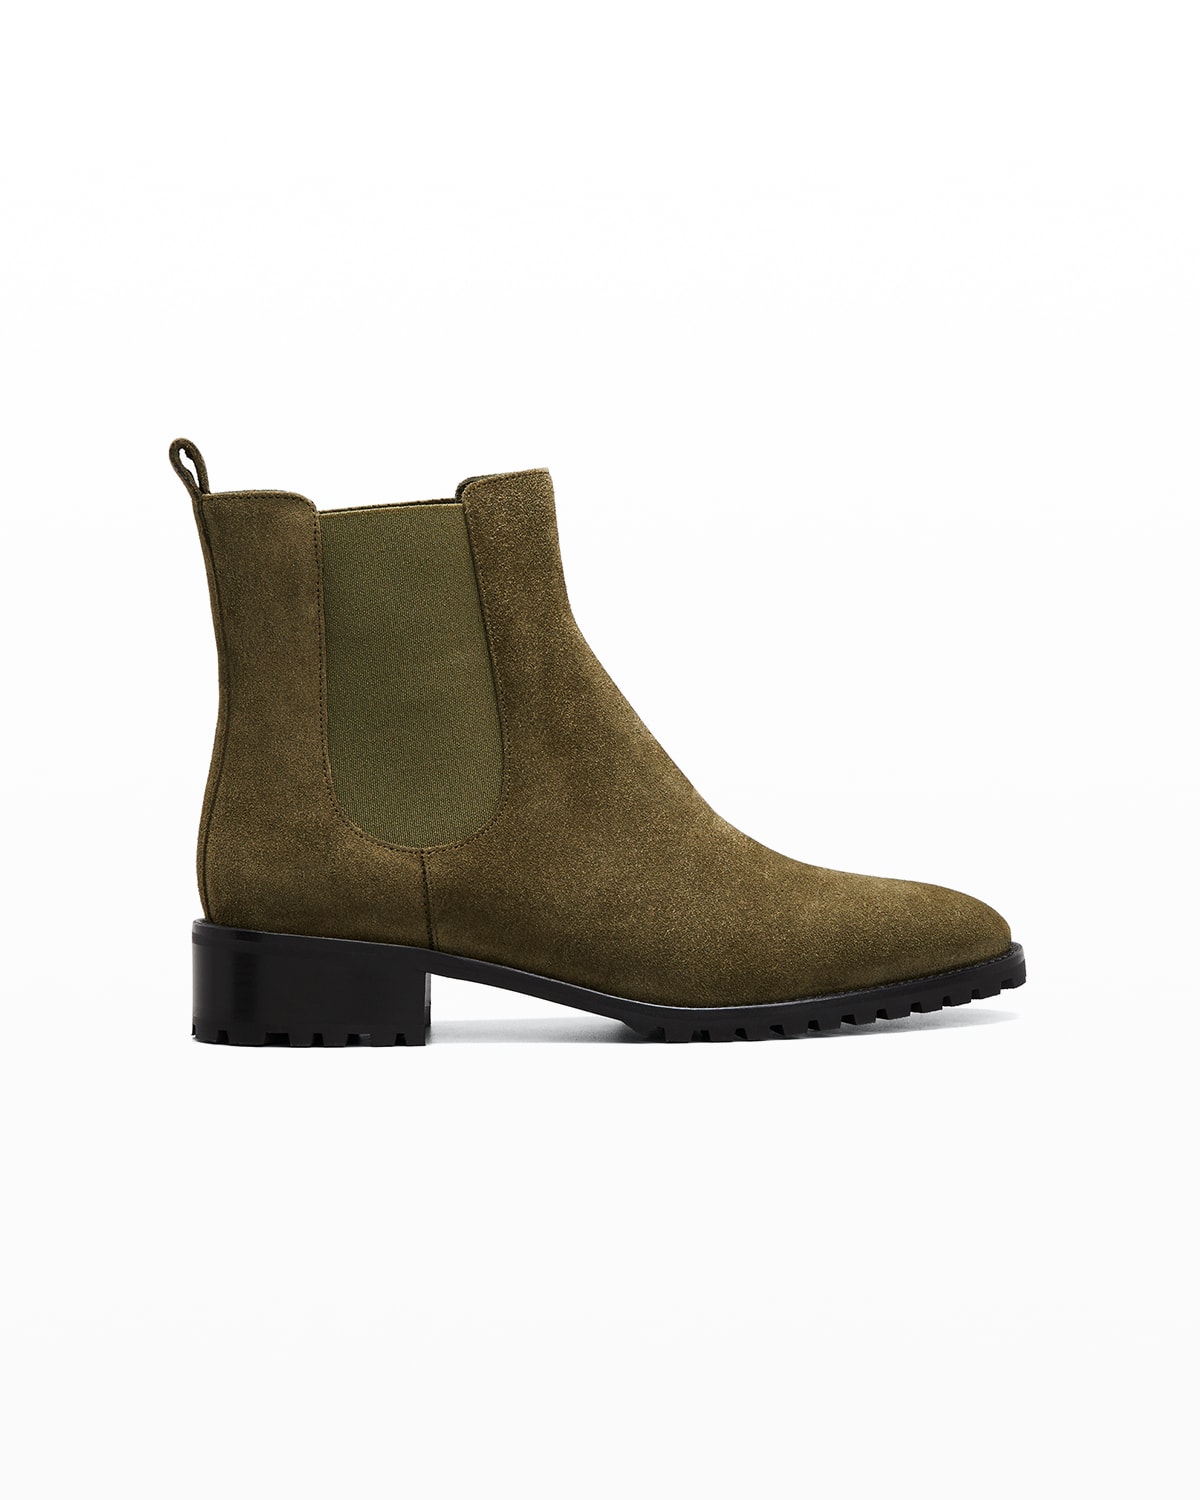 MANOLO BLAHNIK Boots for Women | ModeSens